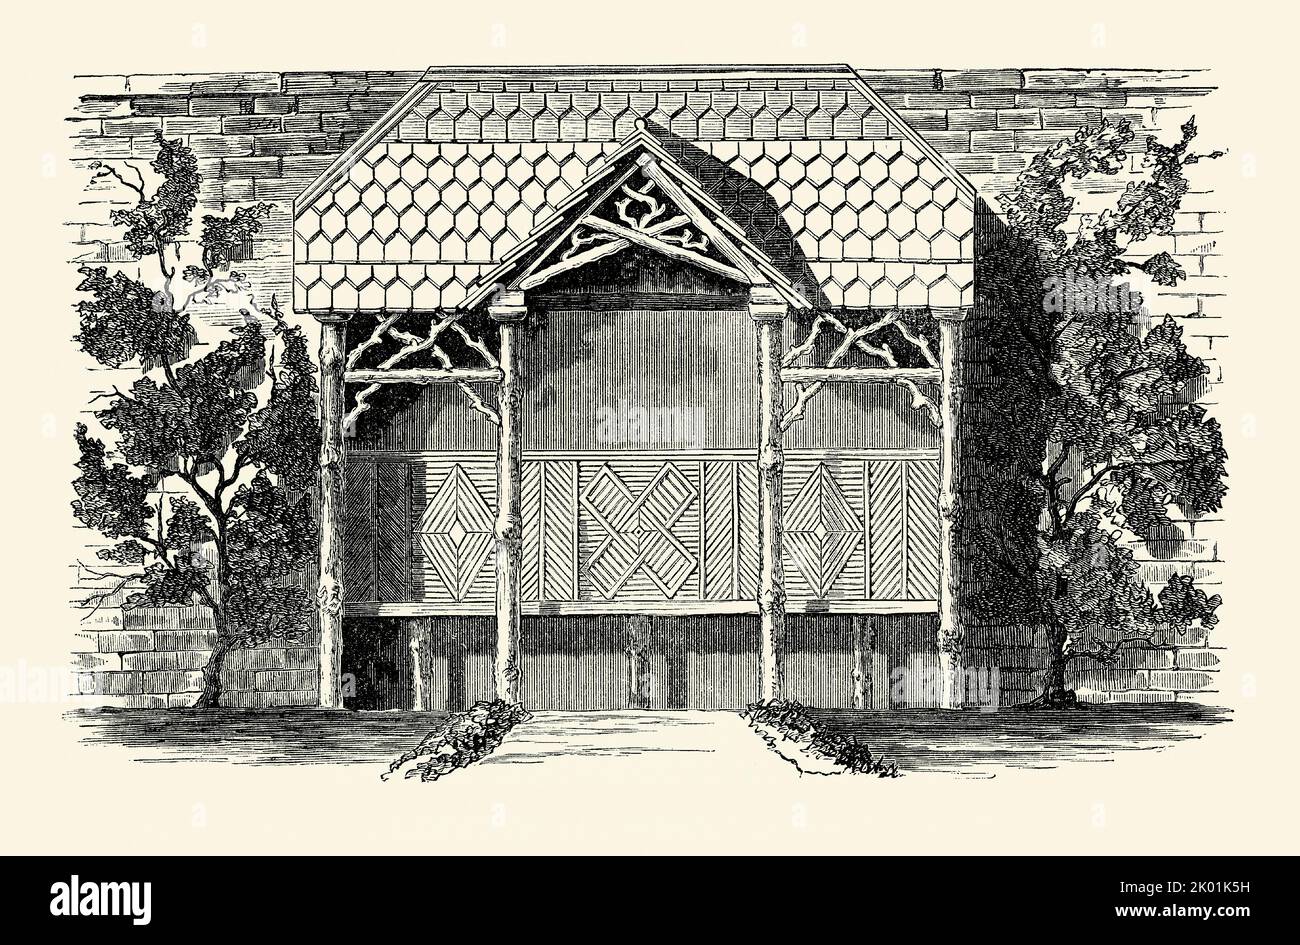 Un antiguo grabado victoriano de un diseño para una casa de verano rústica, de madera, con un techo de tejas o tejas. Es de un libro de 1890. El refugio se inclina contra la pared del jardín y también cuenta con bancos. Foto de stock